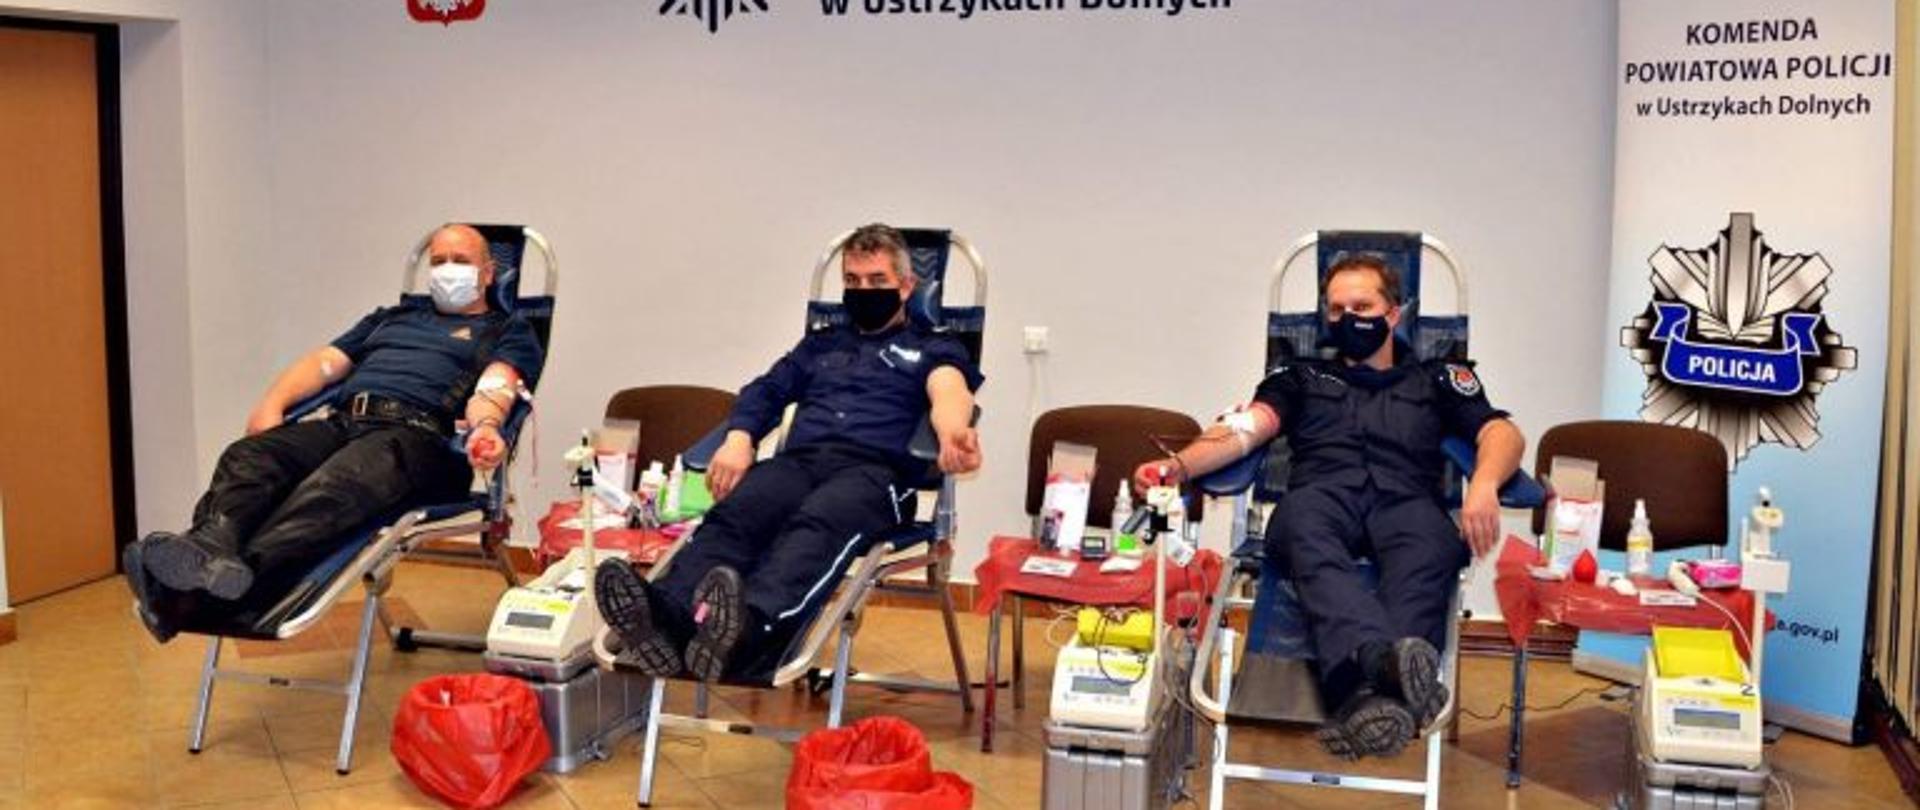 Na zdjęciu zastępca komendanta powiatowego psp w ustrzykach dolnych wraz z komendantami policji, oddają krew. w tle logo Komendy Powiatowej Policji 